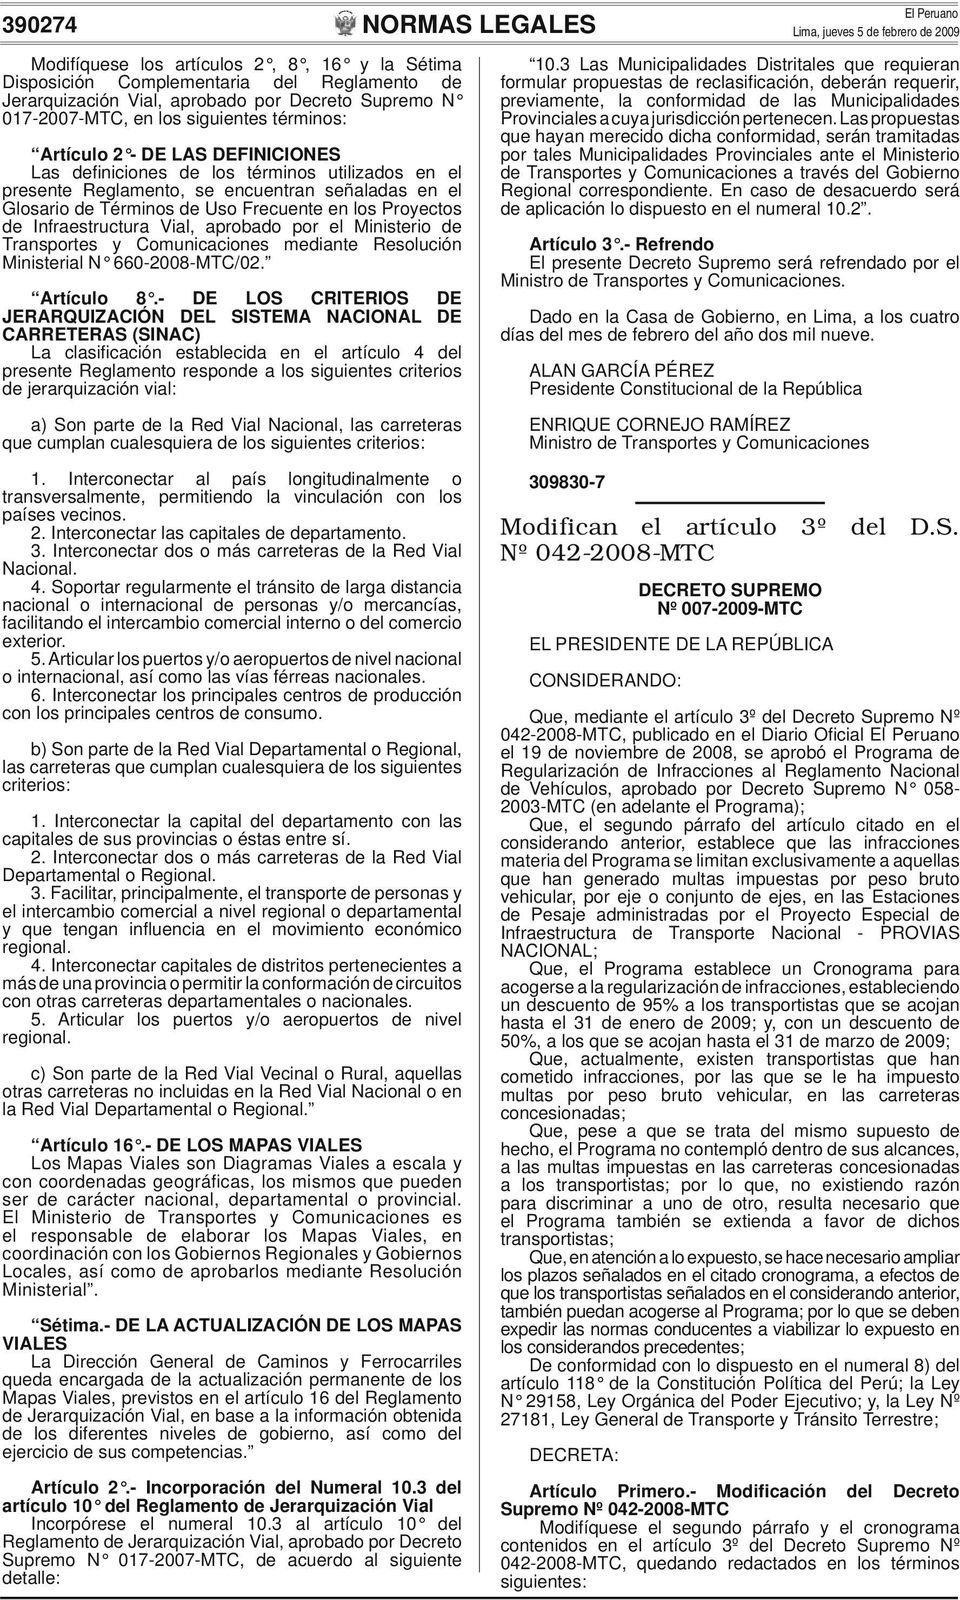 Infraestructura Vial, aprobado por el Ministerio de Transportes y Comunicaciones mediante Resolución Ministerial N 660-2008-MTC/02. Artículo 8.